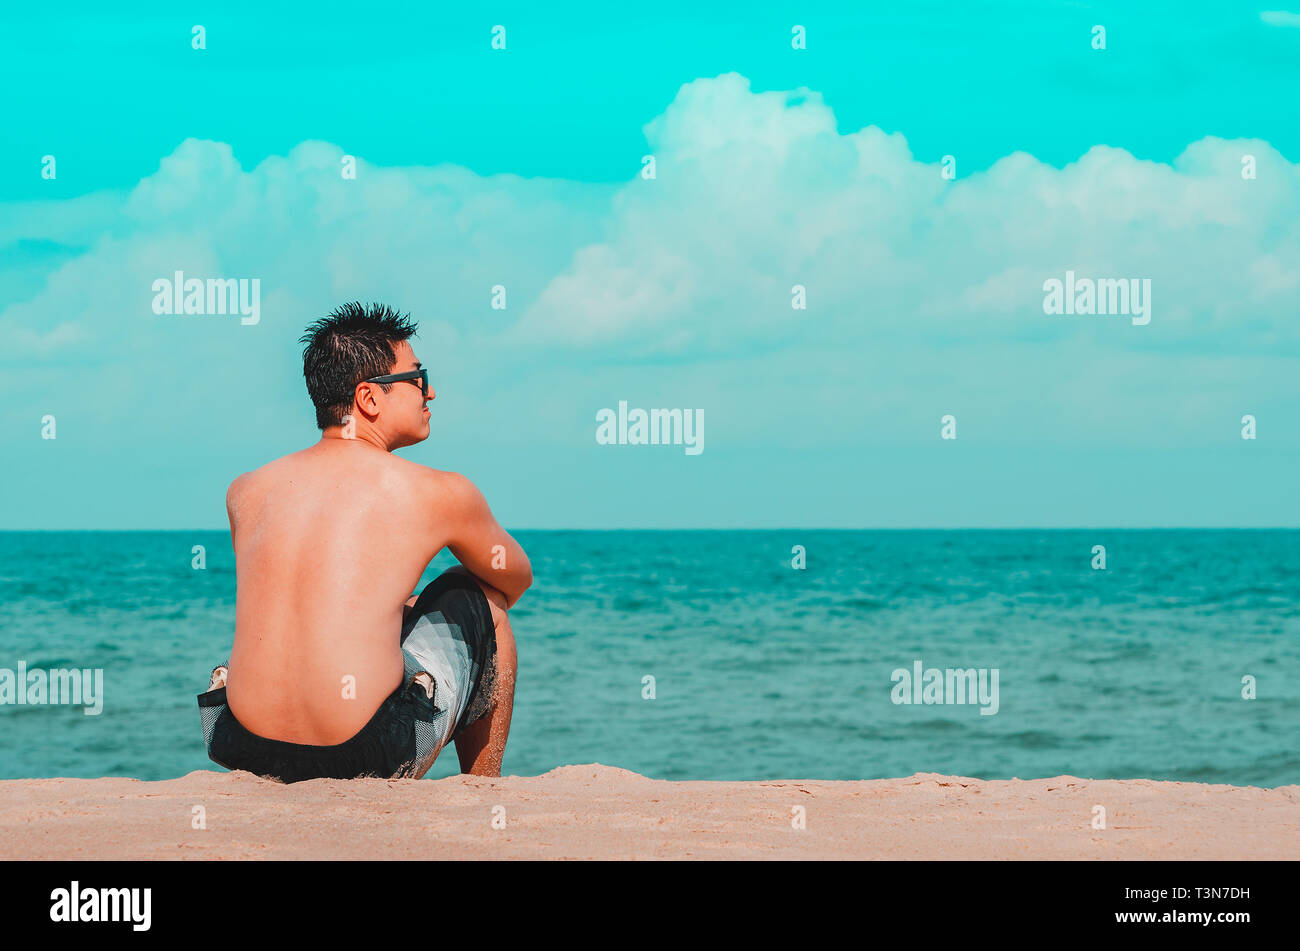 Mann auf der Sand am Strand sitzt, starrt auf das Meer. Cyan und orange Tönen. Foto bei Praia de Tabatinga 2, Conde PB Brasilien. Stockfoto